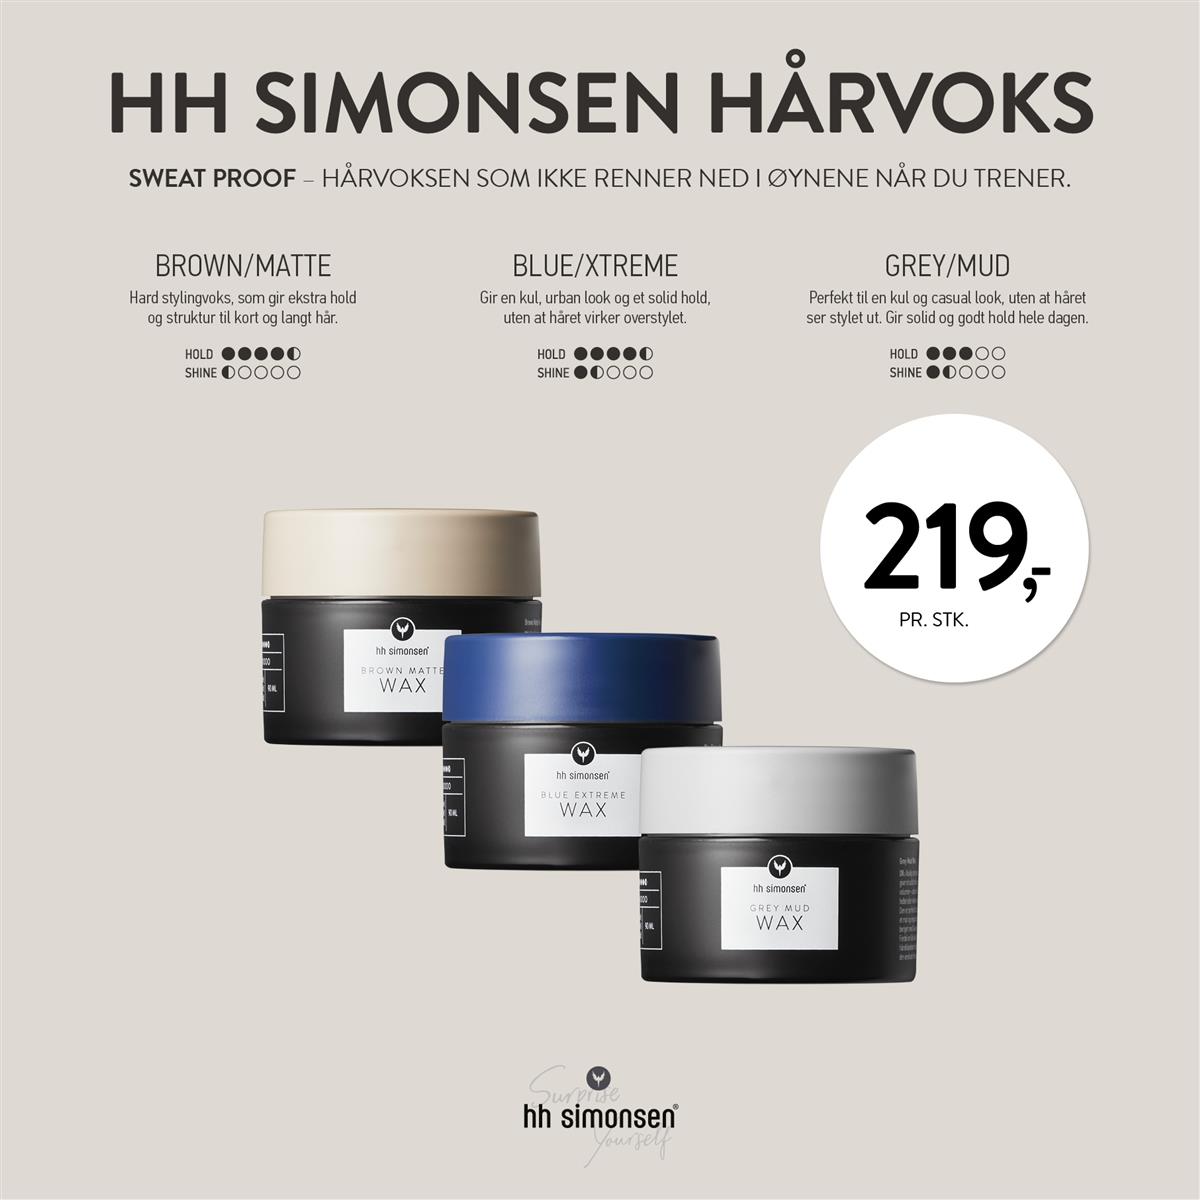 HH SIMONSEN - VOKS - FEBRUAR 2020